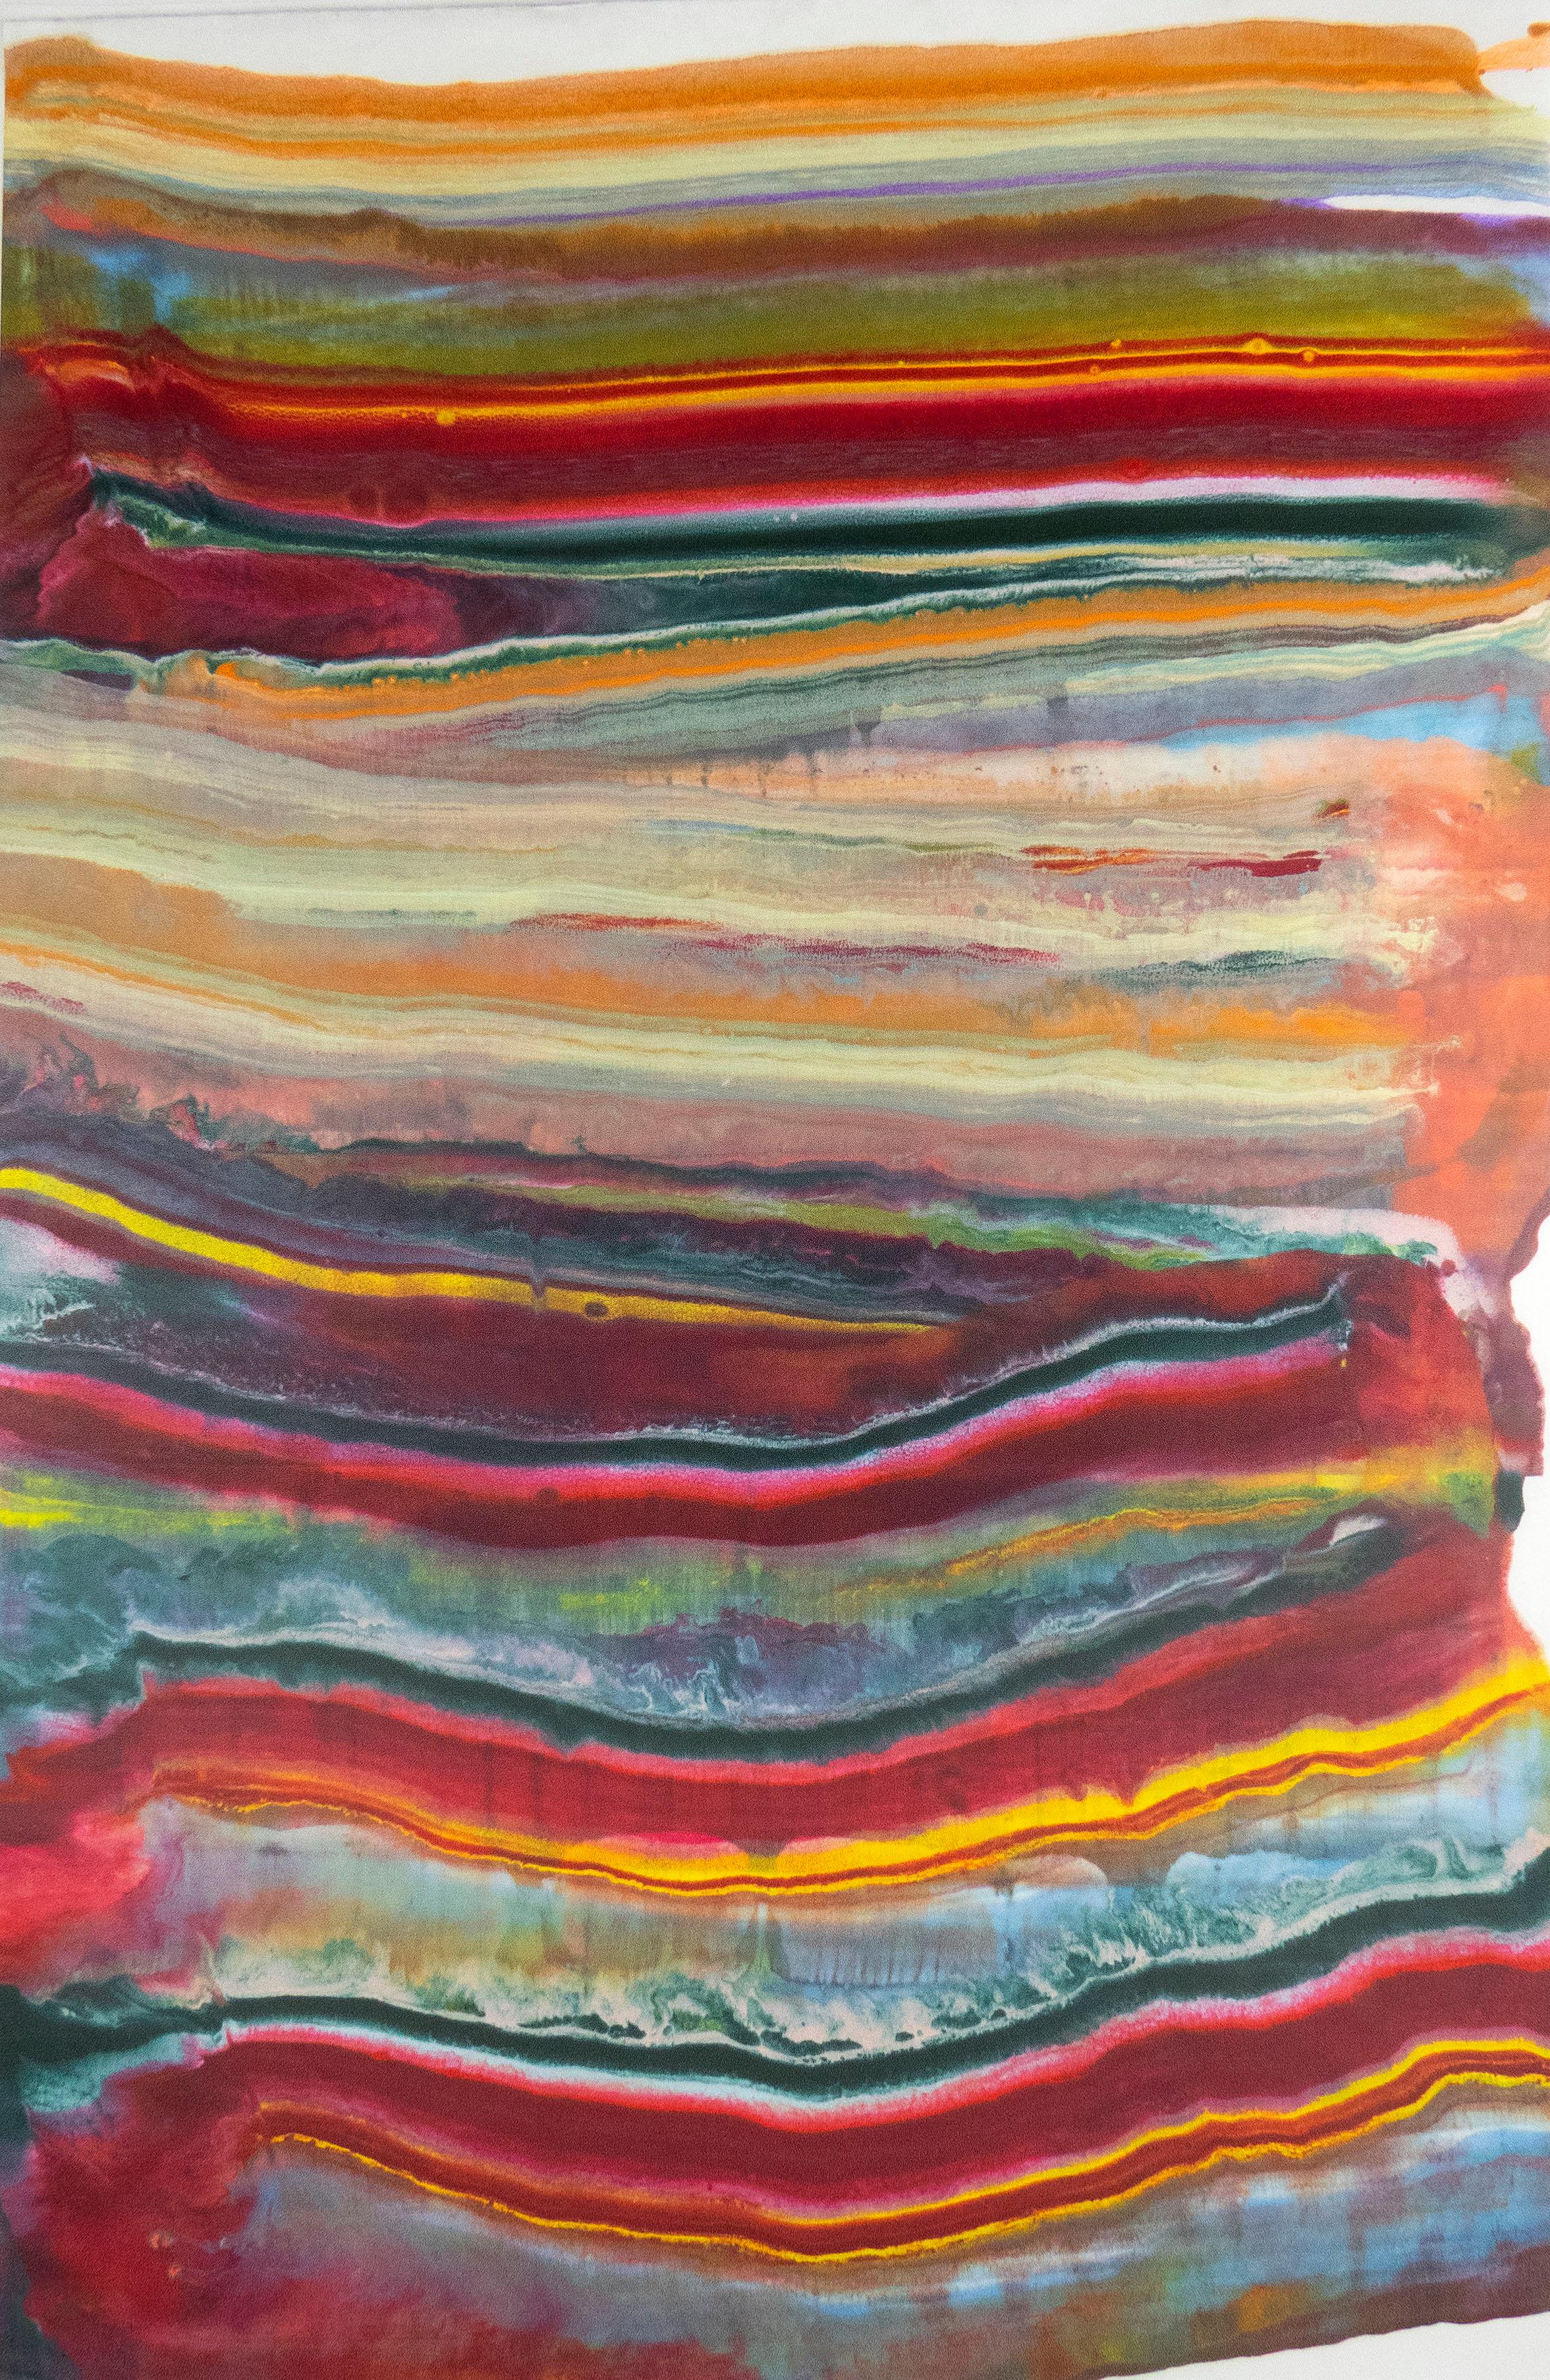 Abstract Print Laura Moriarty - Talking to Rocks 19, monotype à l'encaustique abstrait rouge magenta, bleu ciel, orange